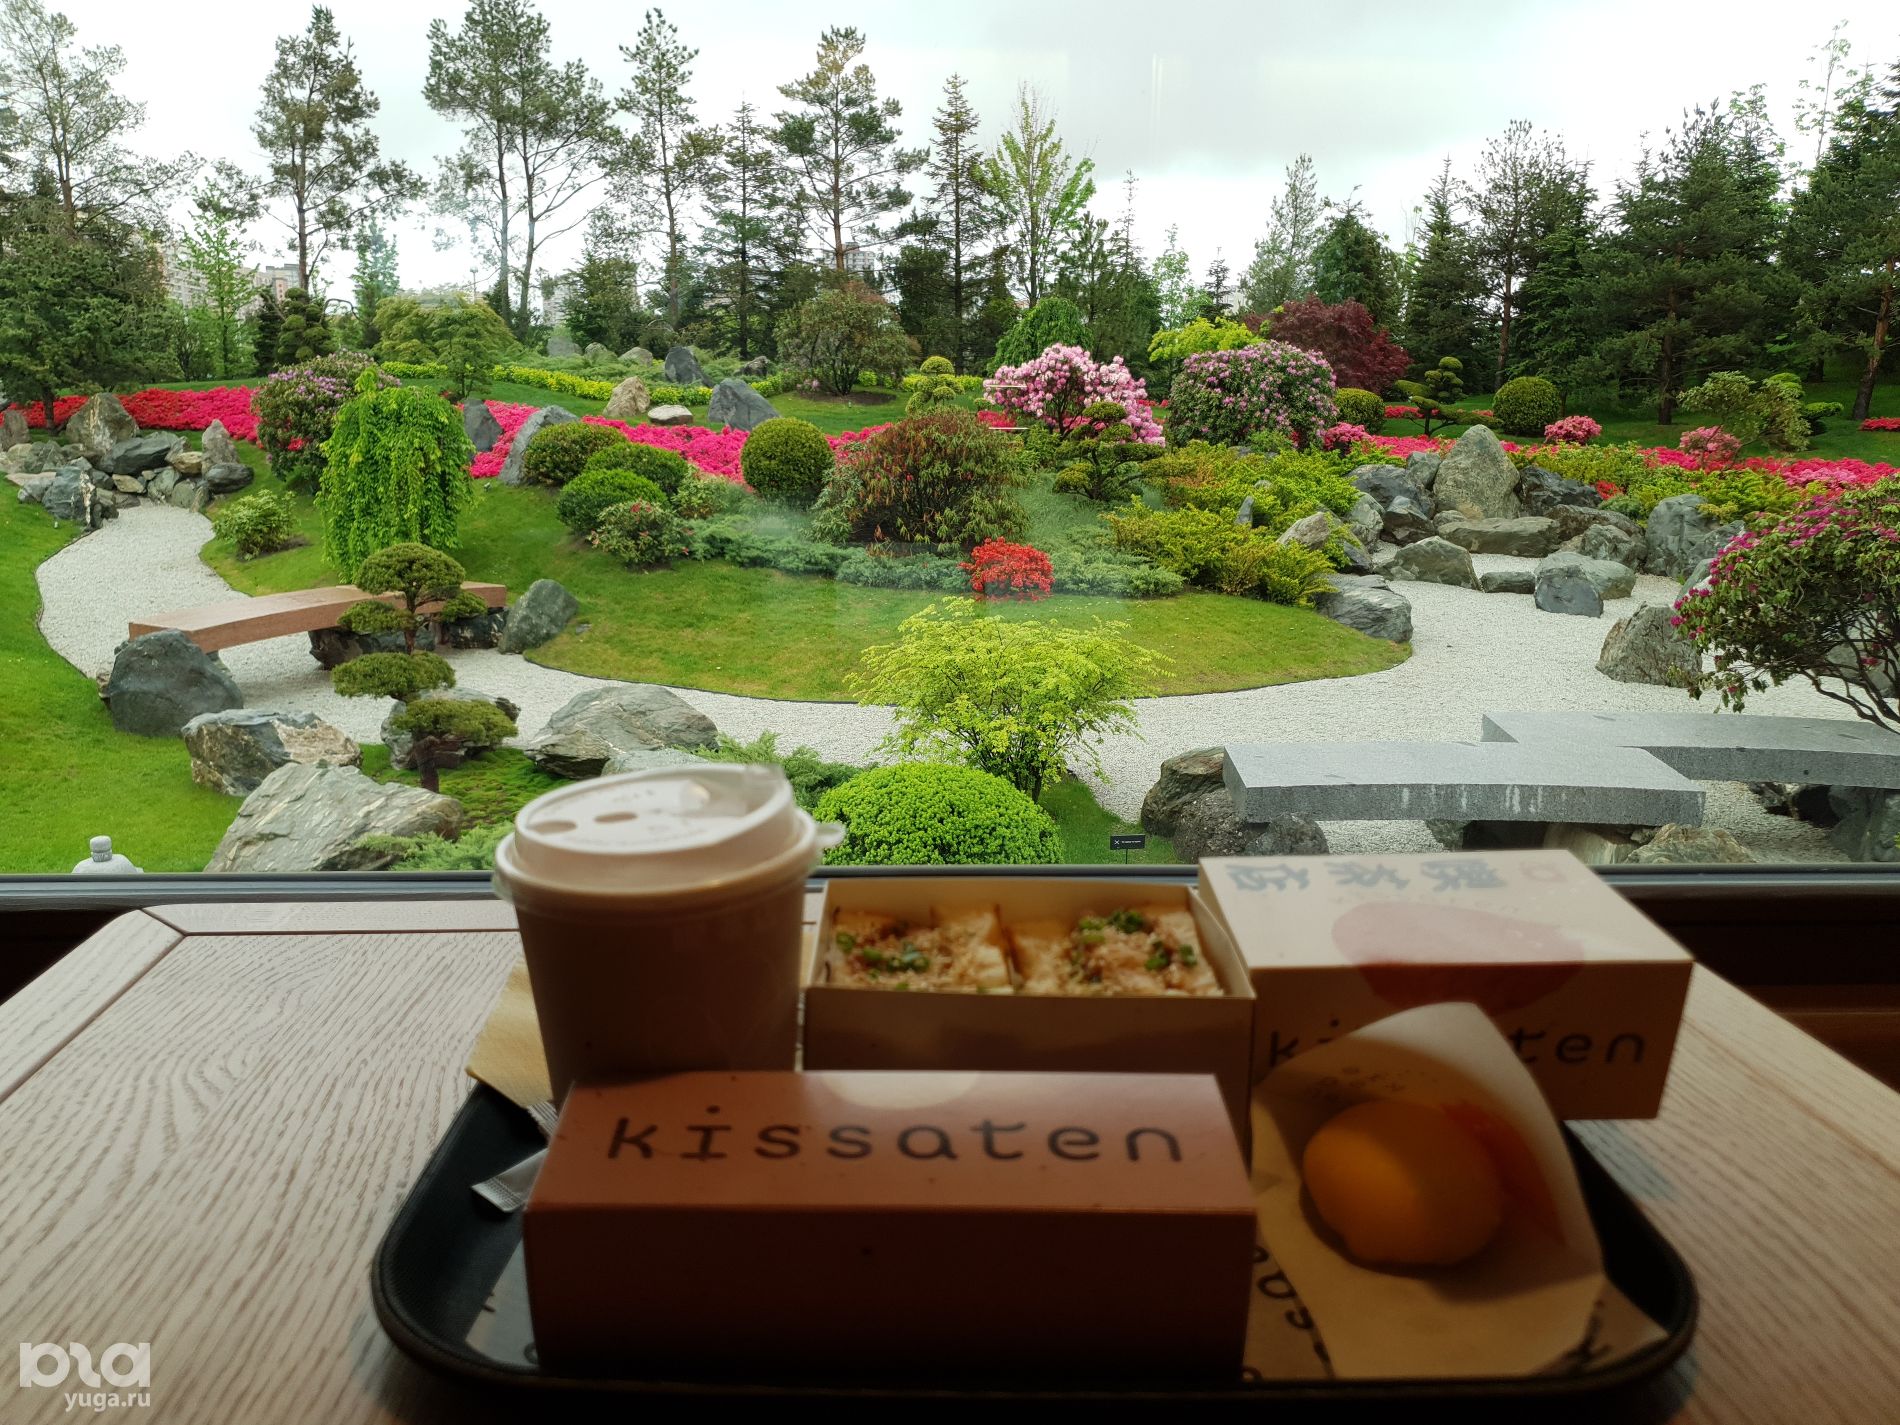 Кофейня Kissaten в Японском саду © Фото Марины Солошко, Юга.ру